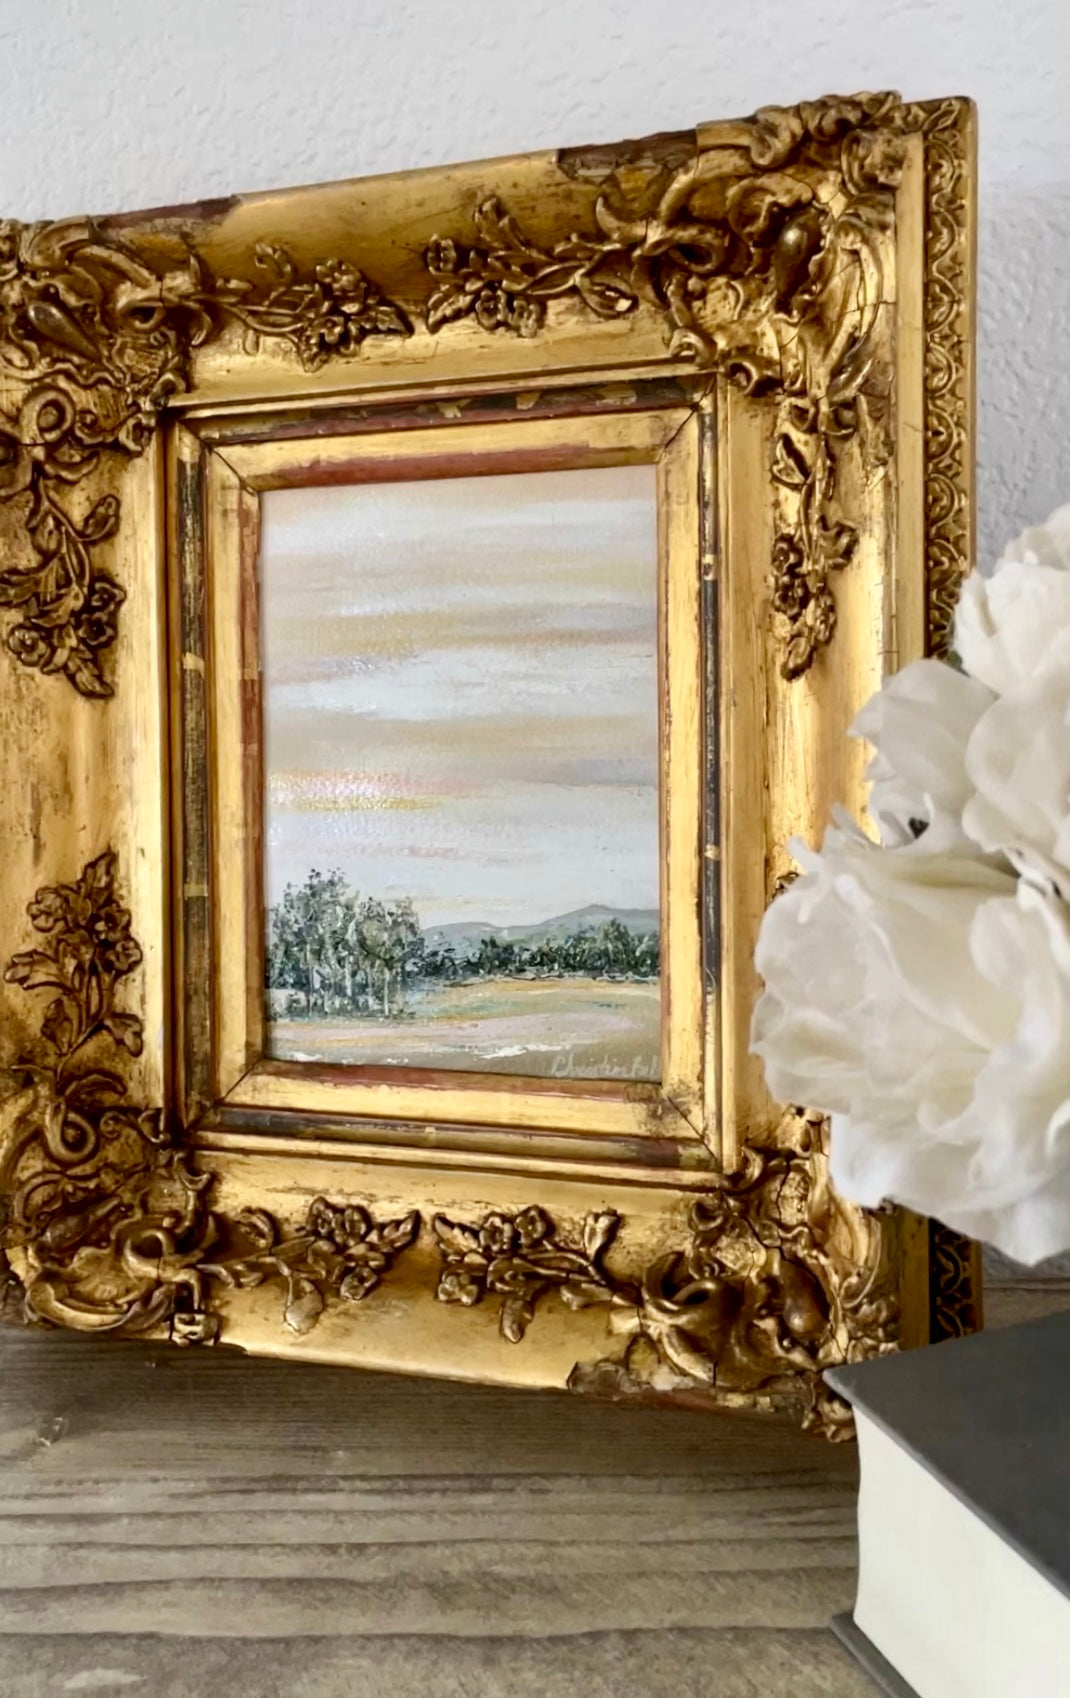 "Beyond the Hills" FRAMED ORIGINAL Landscape Painting, Gold Baroque 1800's ANTIQUE Frame